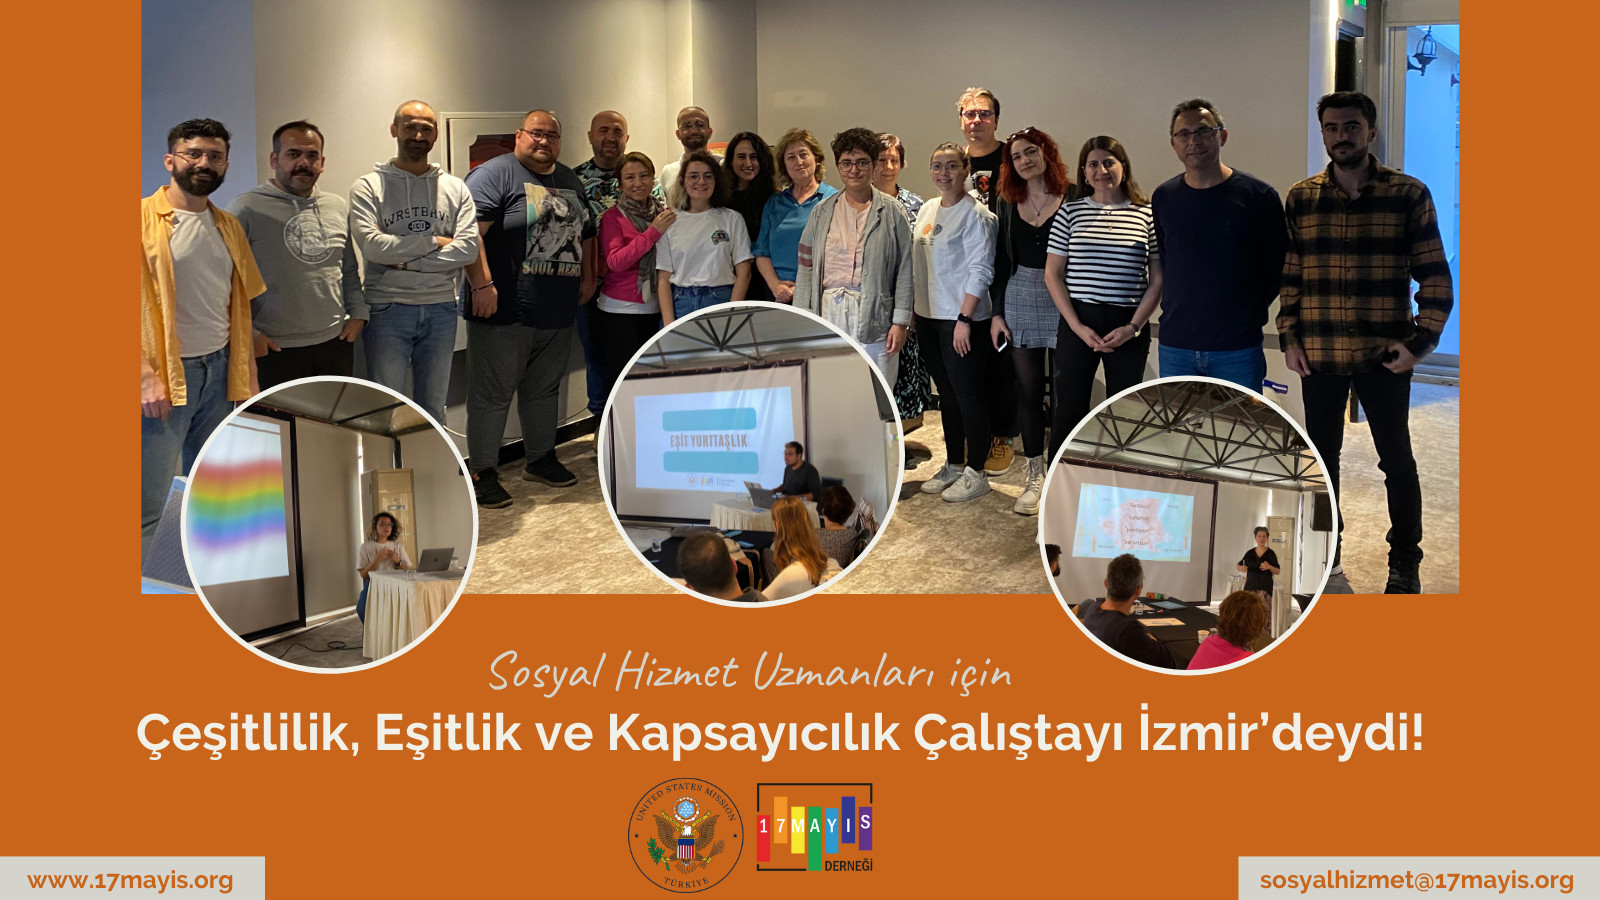 17 Mayıs’ın sosyal hizmet uzmanlarına yönelik çalıştayı İzmir’deydi Kaos GL - LGBTİ+ Haber Portalı